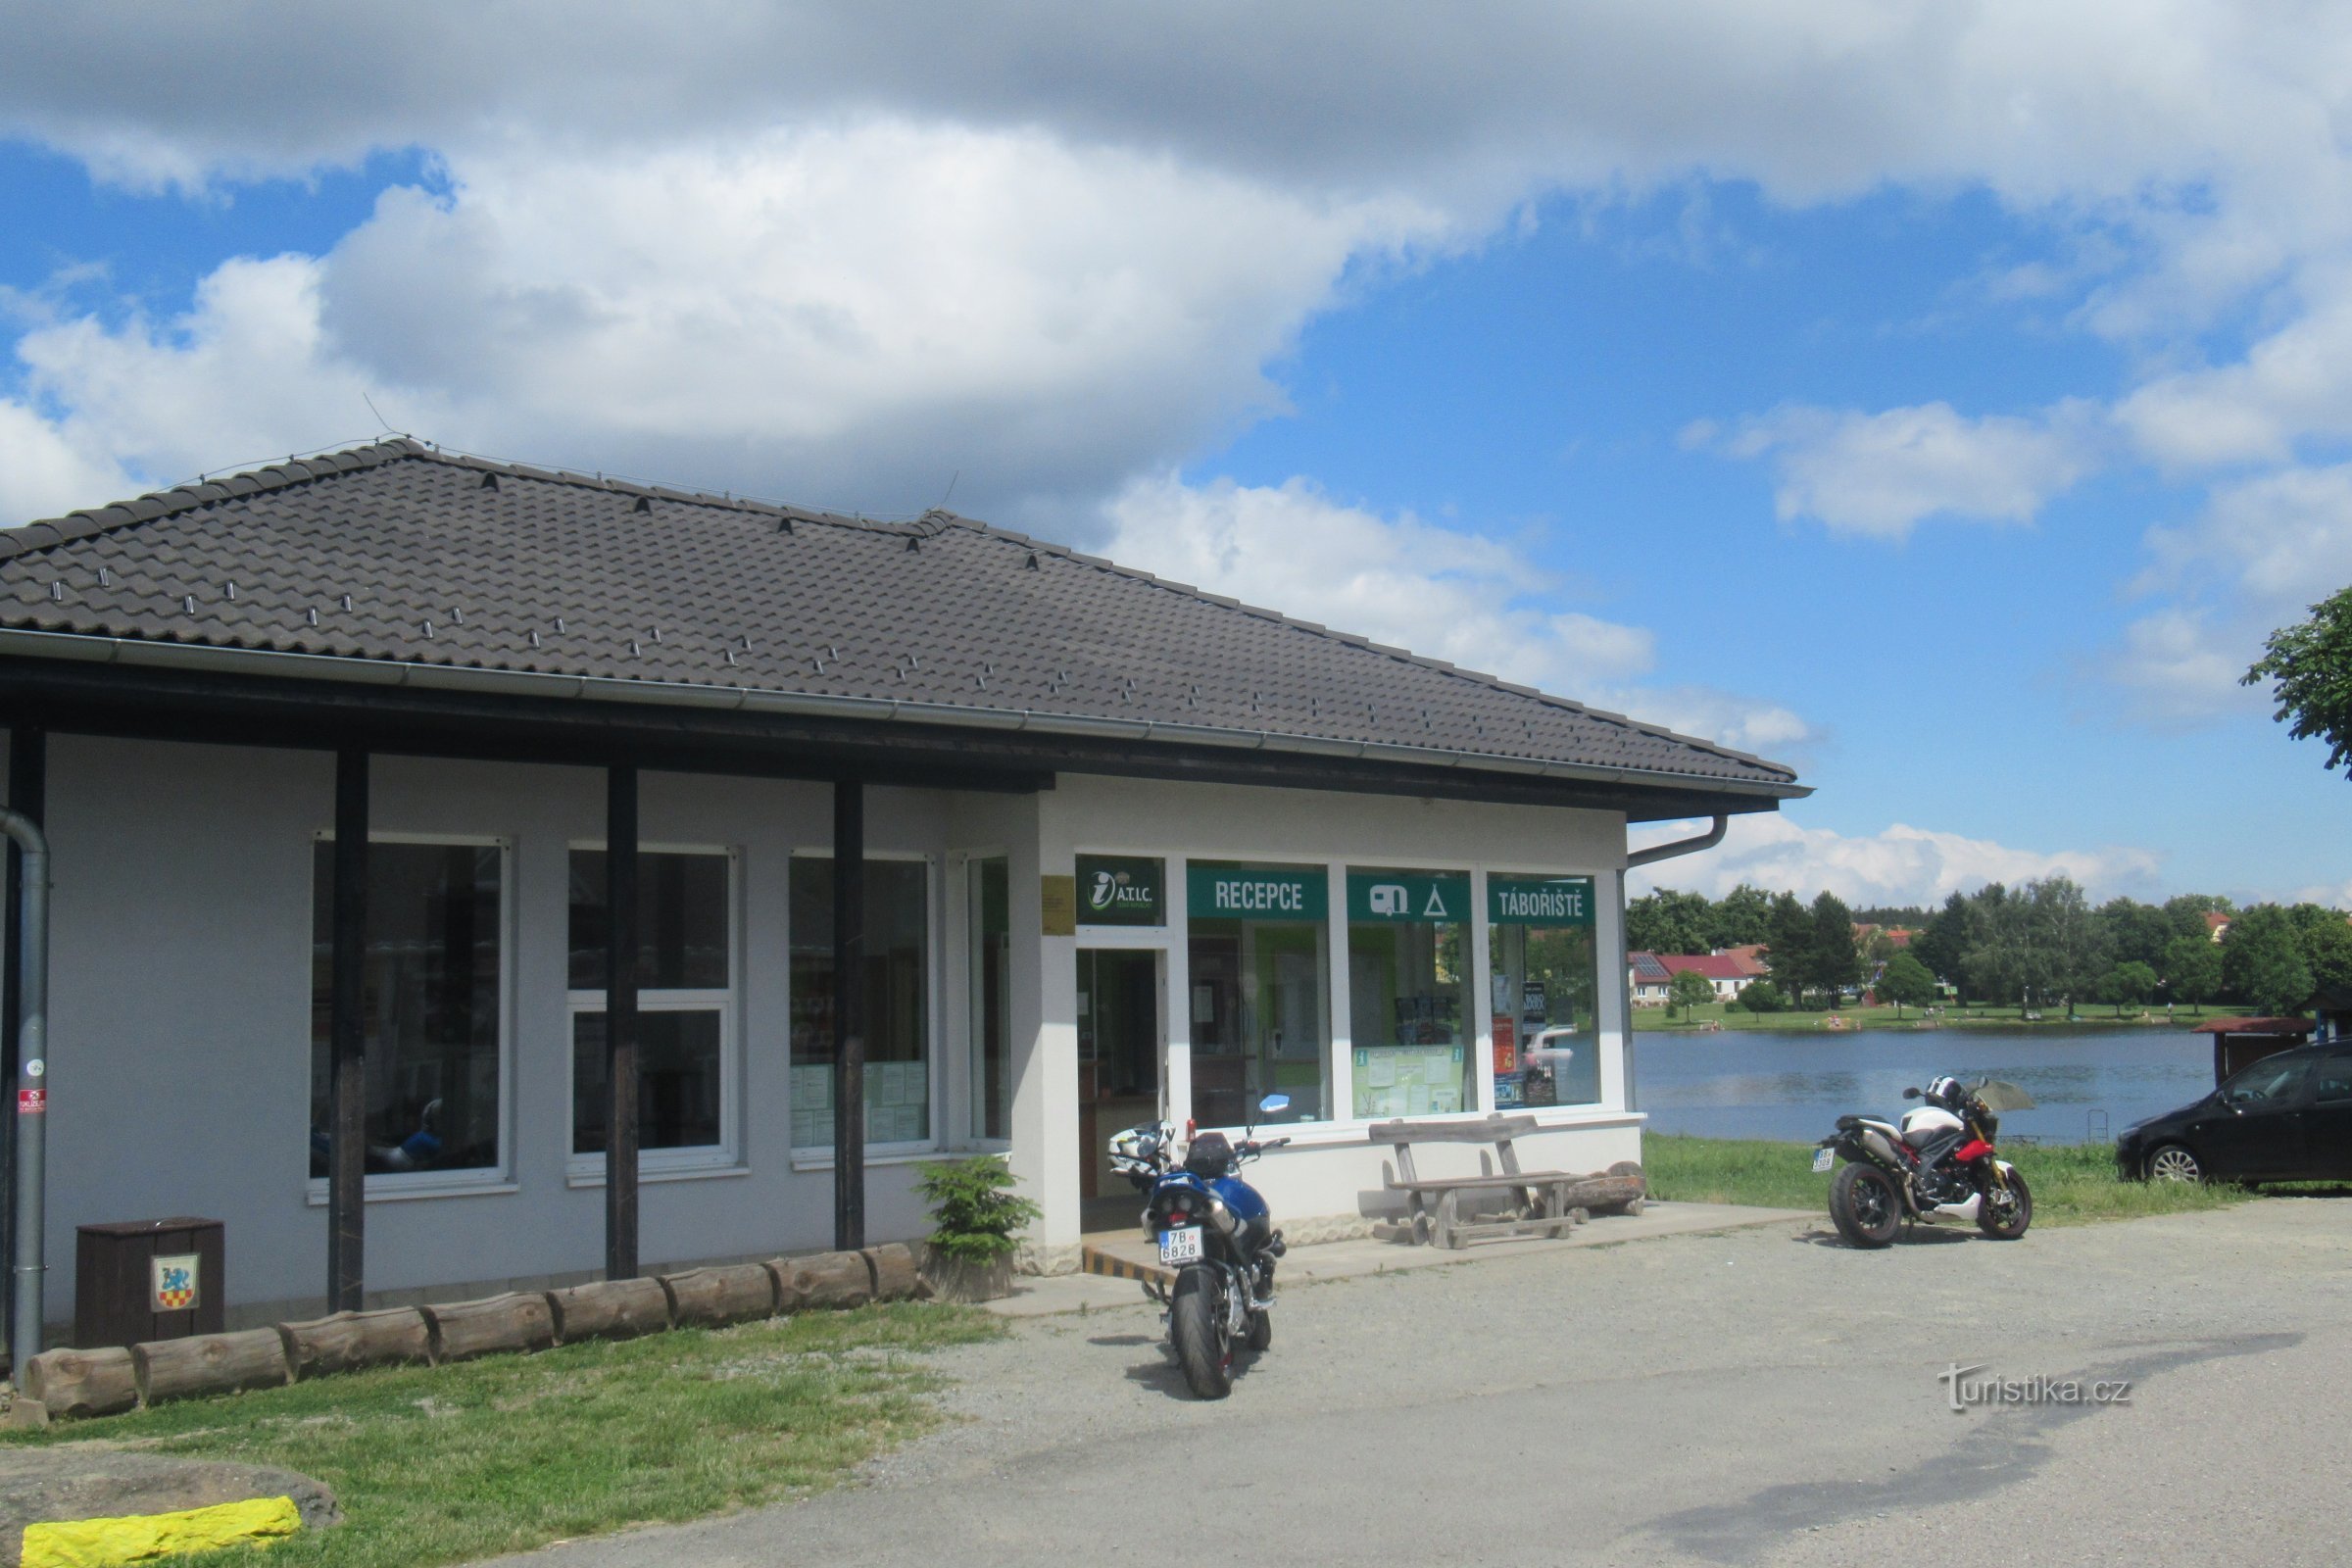 Suchý - Centru de informare turistică